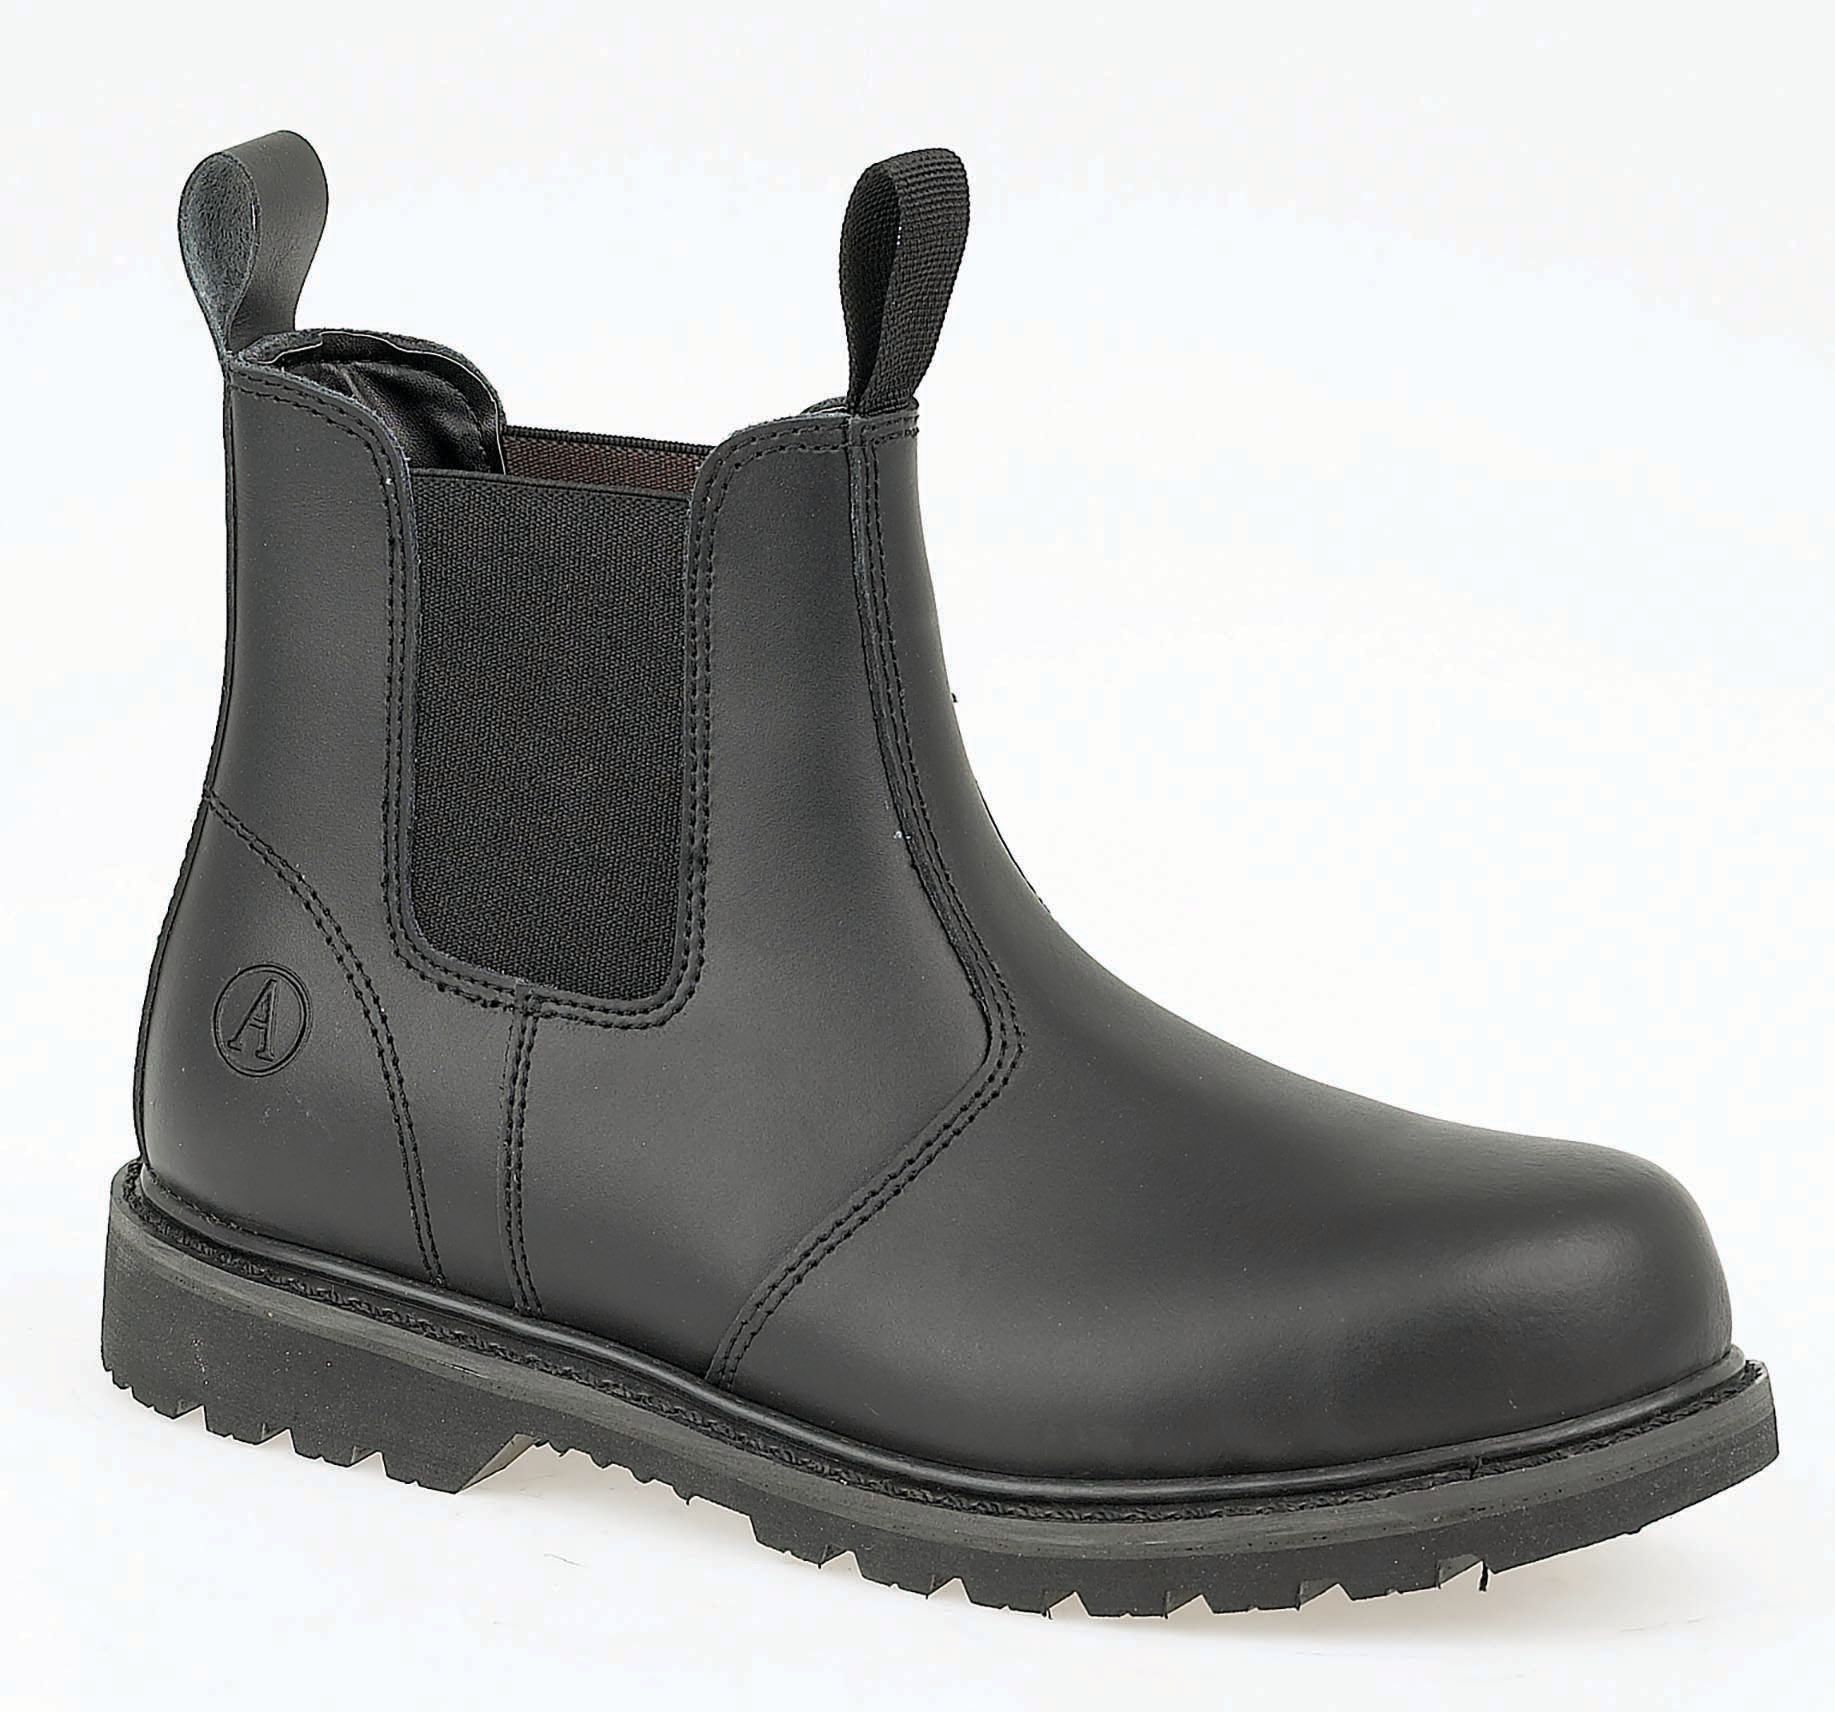 Image of Amblers Safety FS5 Dealer Safety Boot - Black Size 8